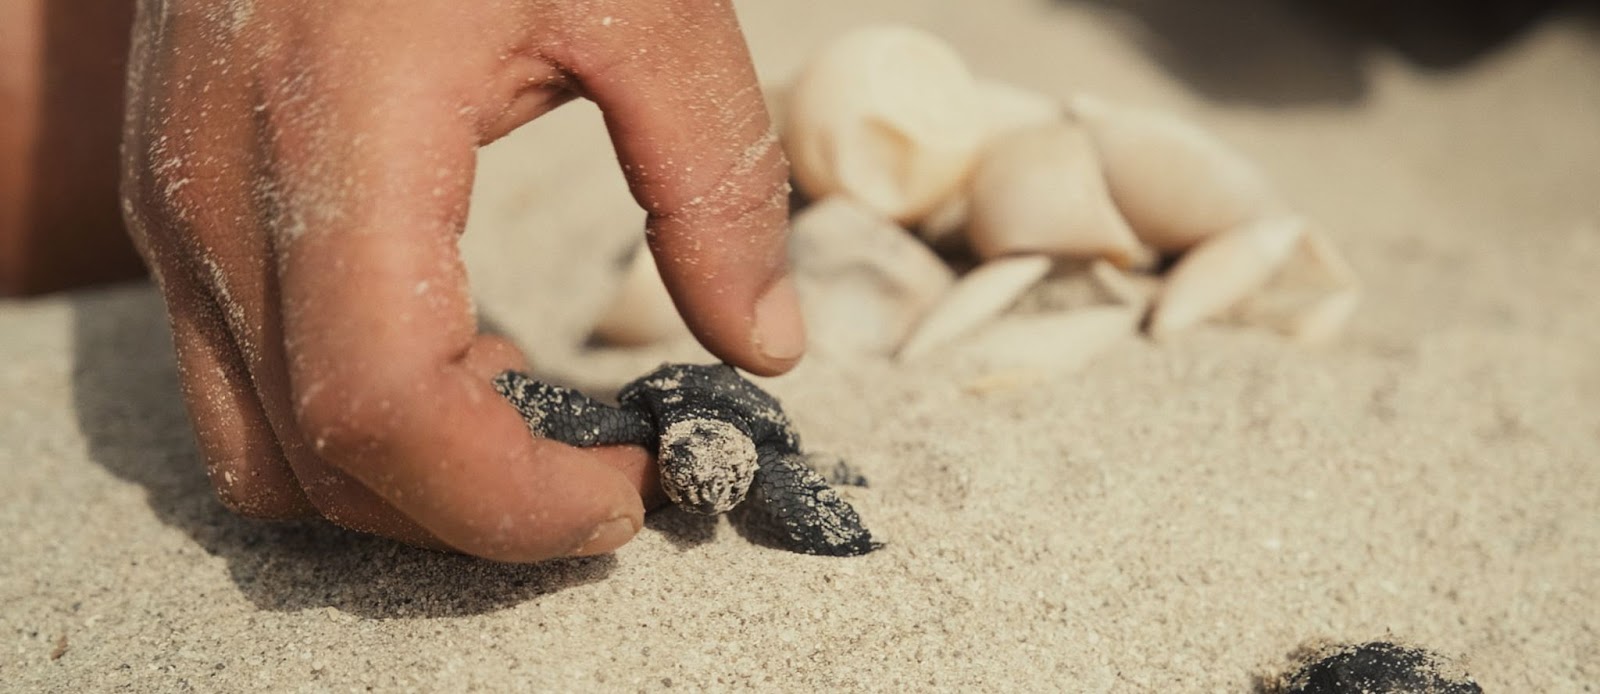 Δείτε εδώ δωρεάν το βραβευμένο ντοκιμαντέρ ‘My Name Is Blue’ για τη συμβίωση ανθρώπου και θαλάσσιων χελωνών στη Μεσόγειο